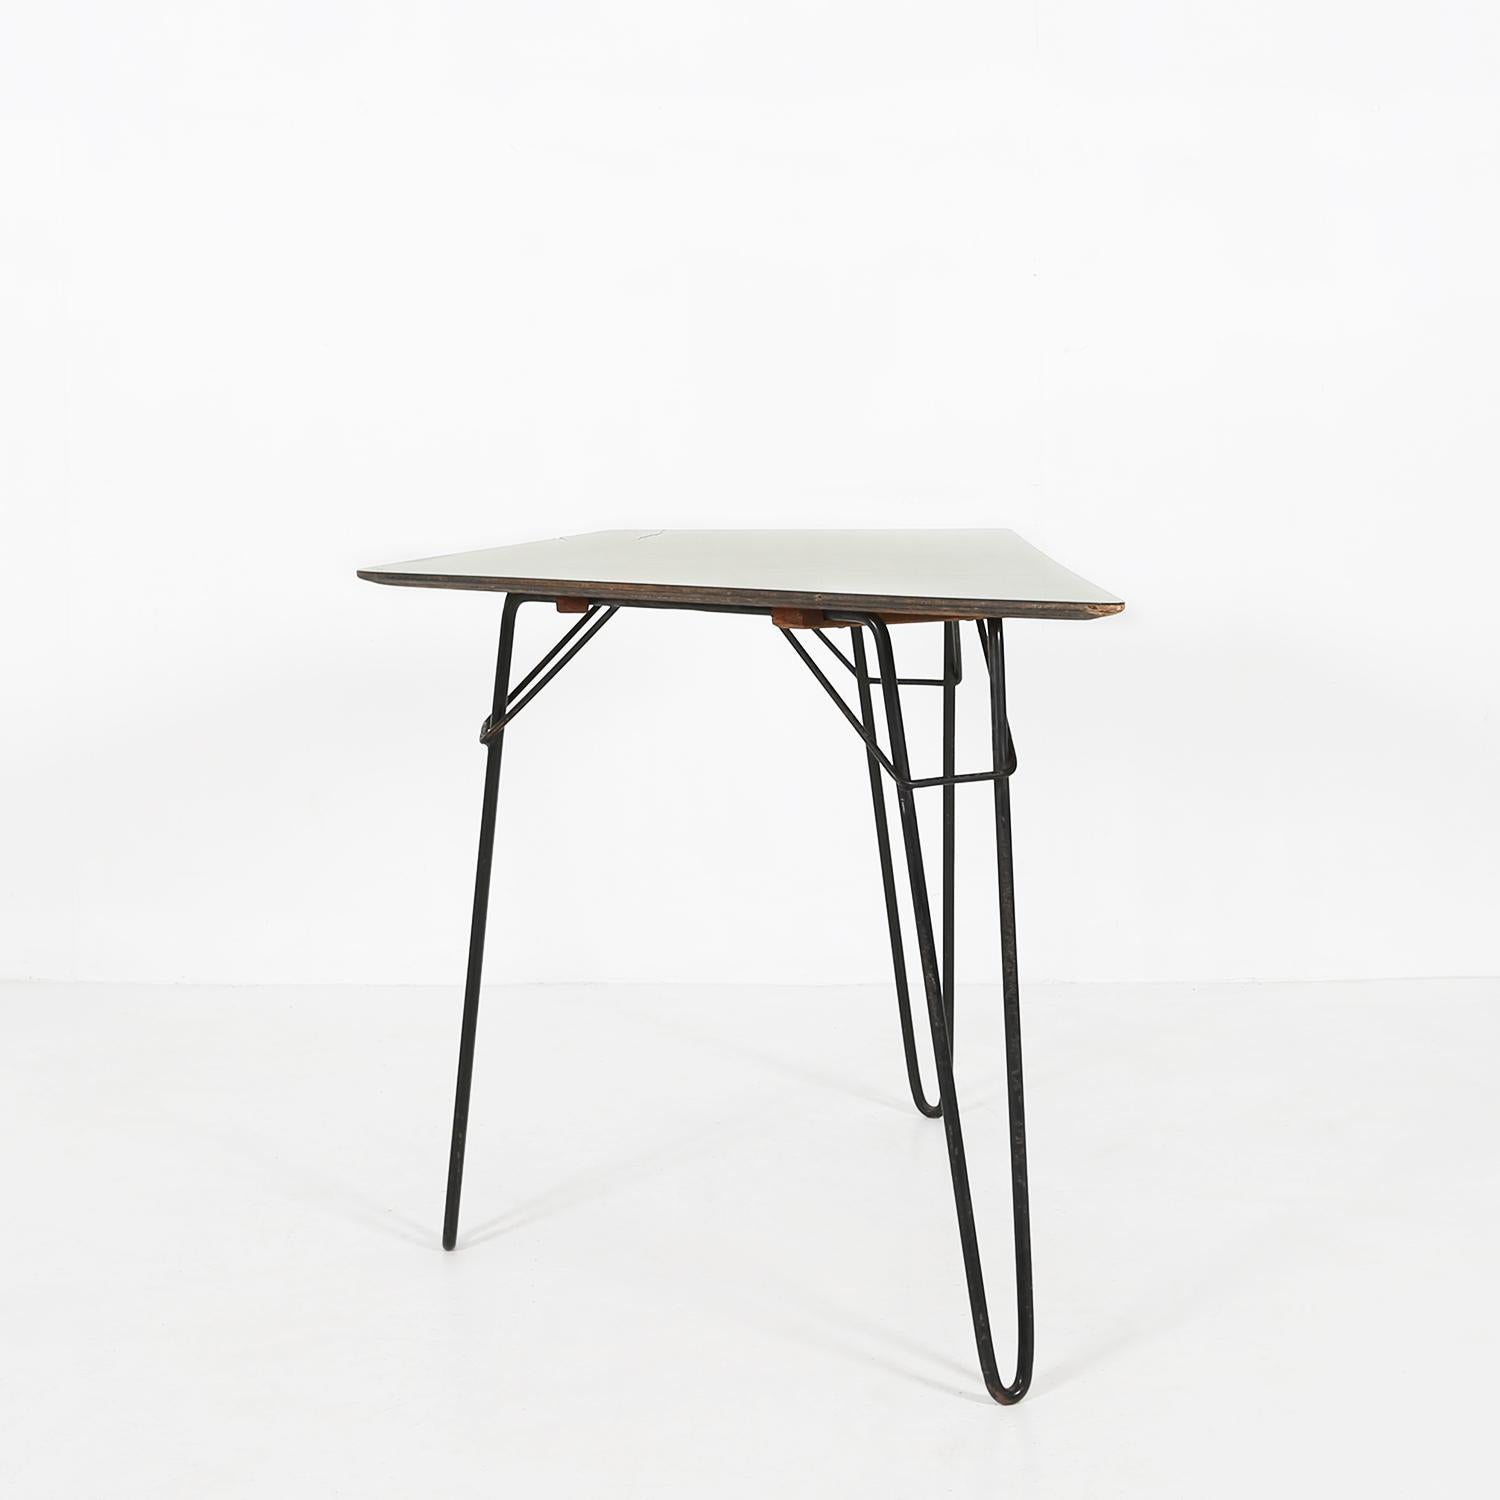 Table à manger T1 conçue par Willy Van Der Meeren pour Tubax en 1954.
Composé d'une base en métal peint en noir et d'un plateau en bois avec dessus en formica jaune clair.

Il y a eu quelques petites restaurations sur le dessus de table.
Les